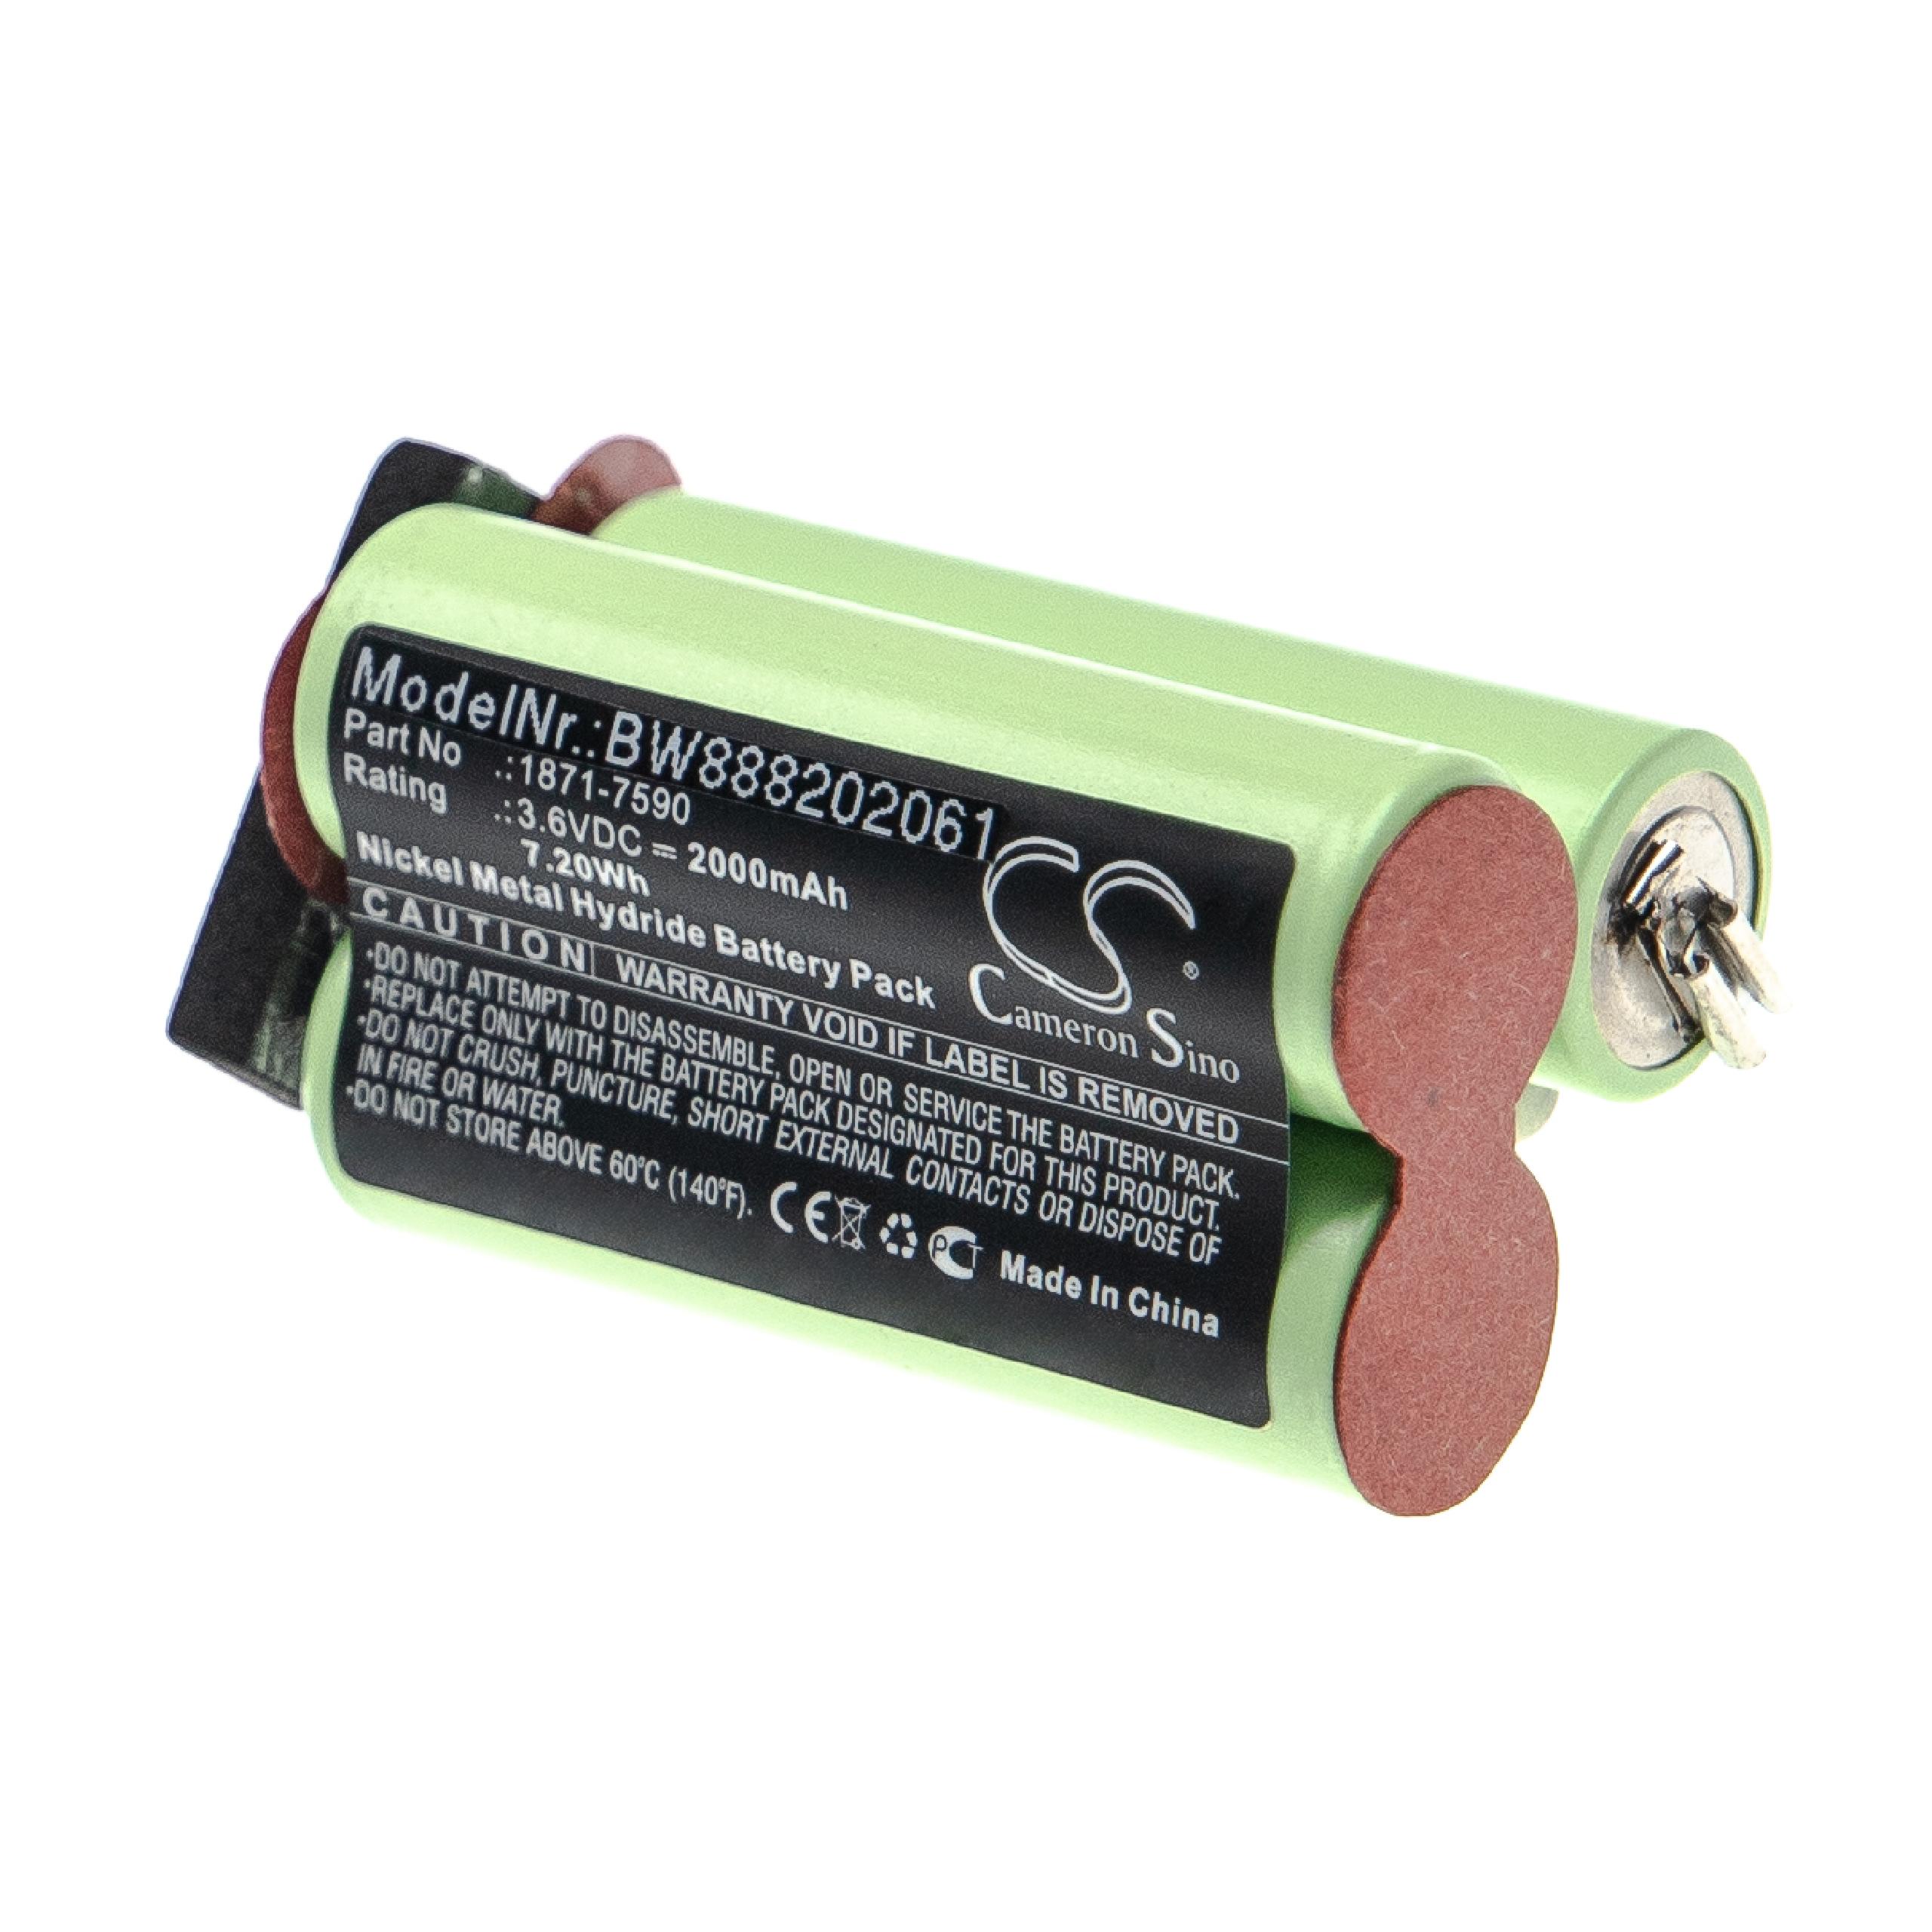 Batteria per macchinetta taglia-capelli sostituisce Moser 1871-7590 Moser - 2000mAh 3,6V NiMH